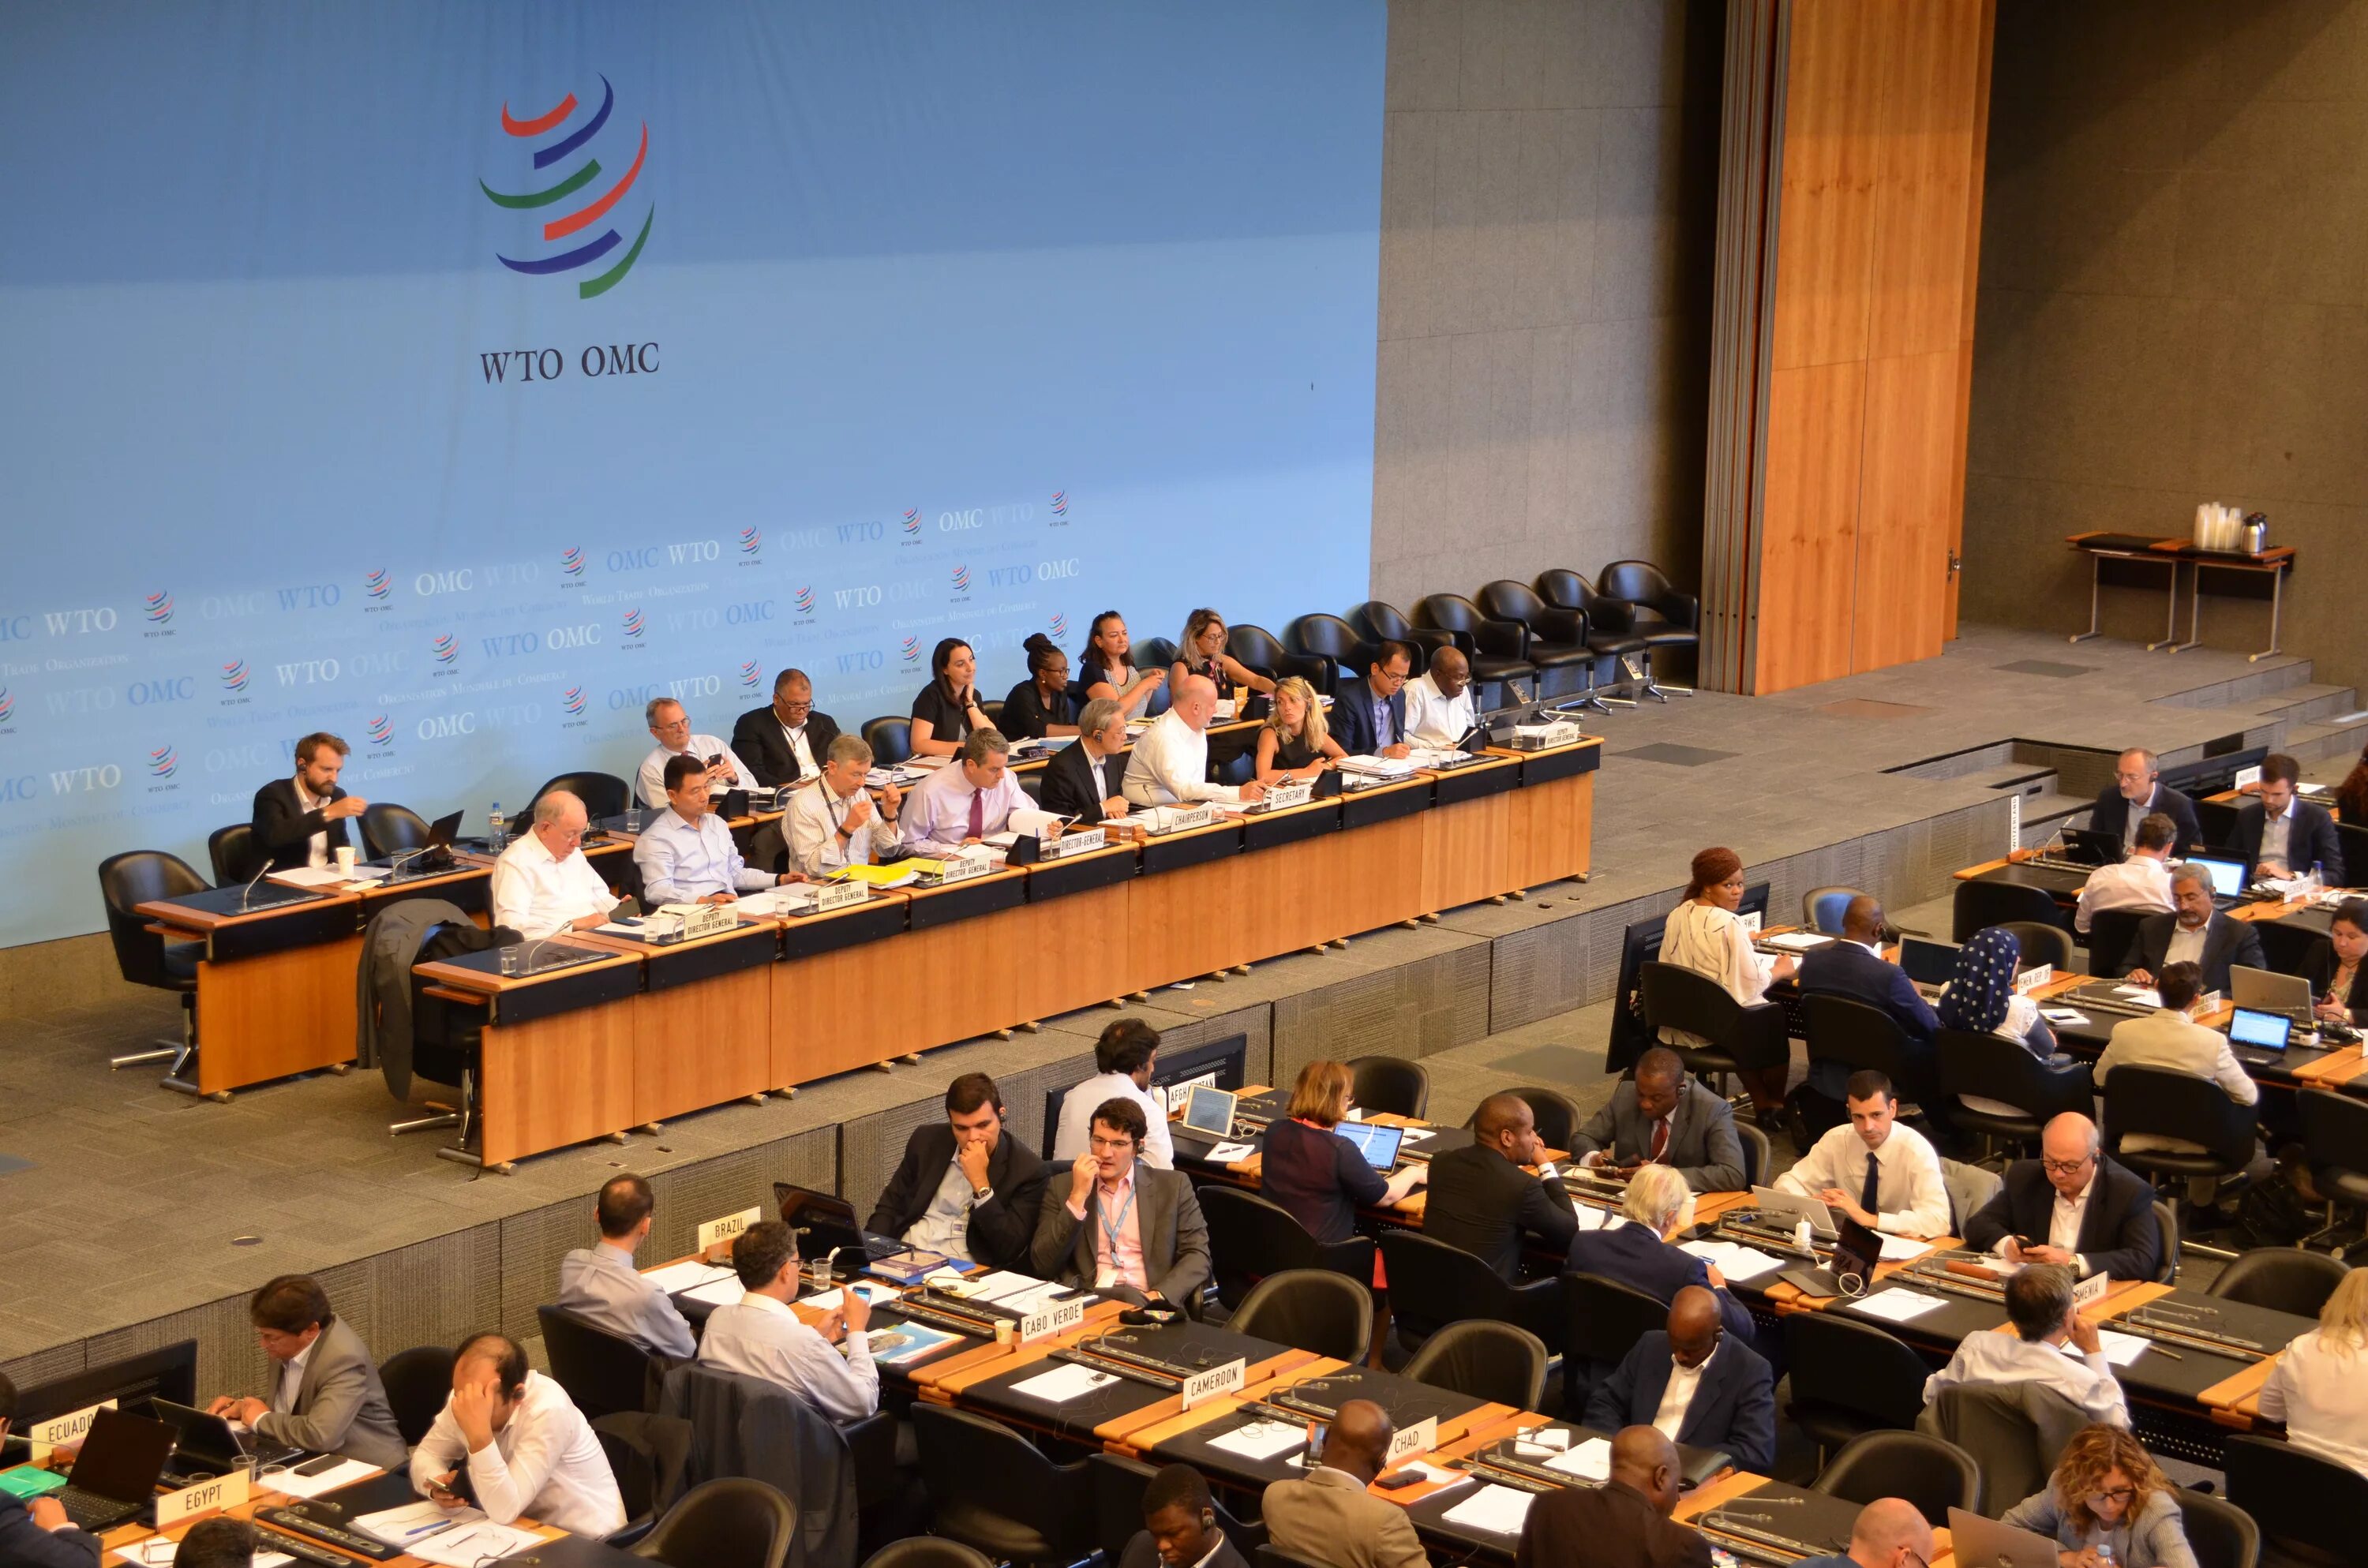 Новая торговая организация. Всемирная торговая организация - ВТО (World trade Organization - WTO).. Конференция министров ВТО. ВТО Женева. Заседание ВТО.